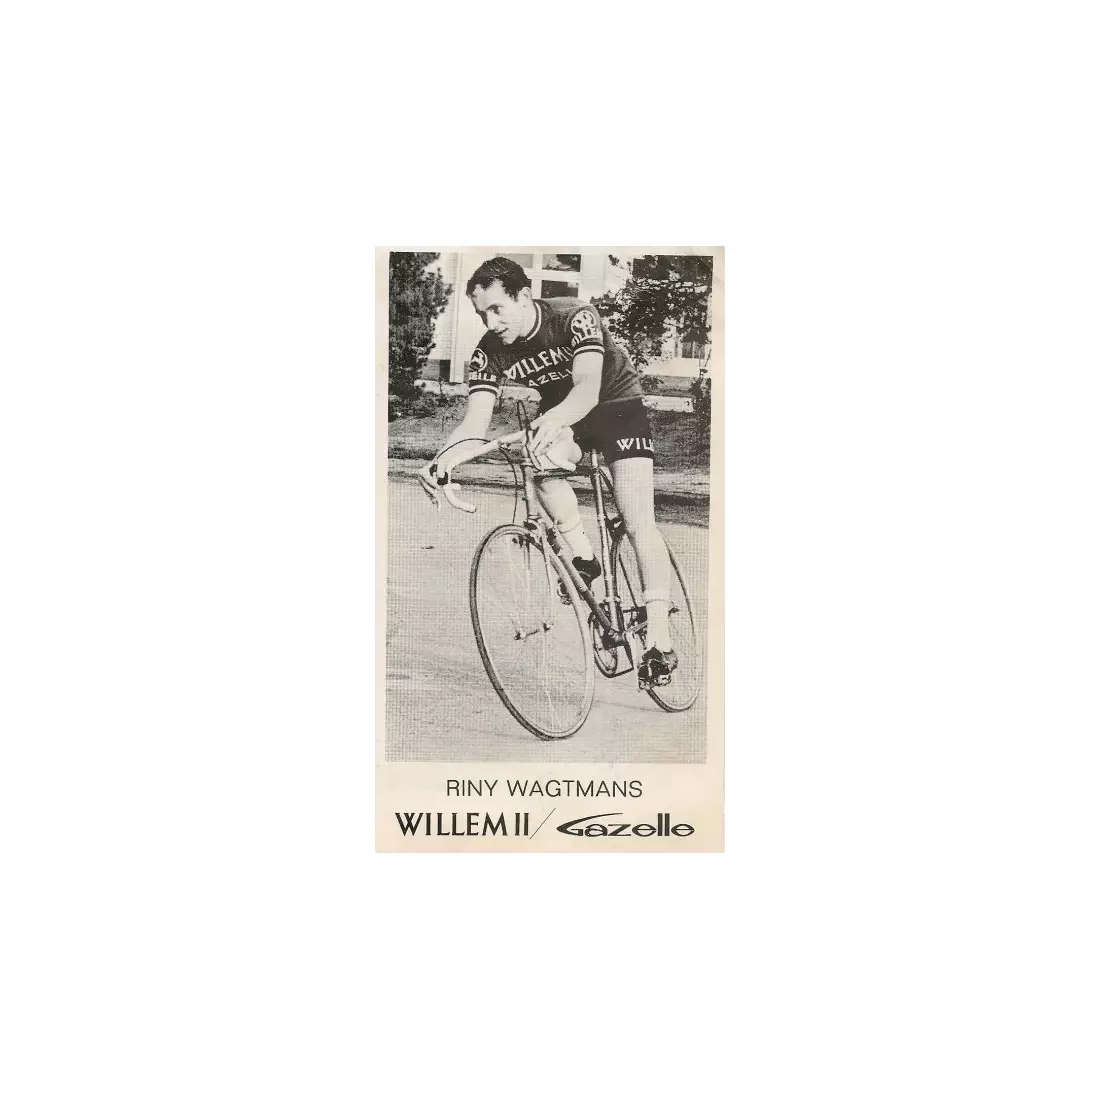 ROGELLI BIKE WILLEM II Fahrradtrikot 001.219, Farbe: Blau